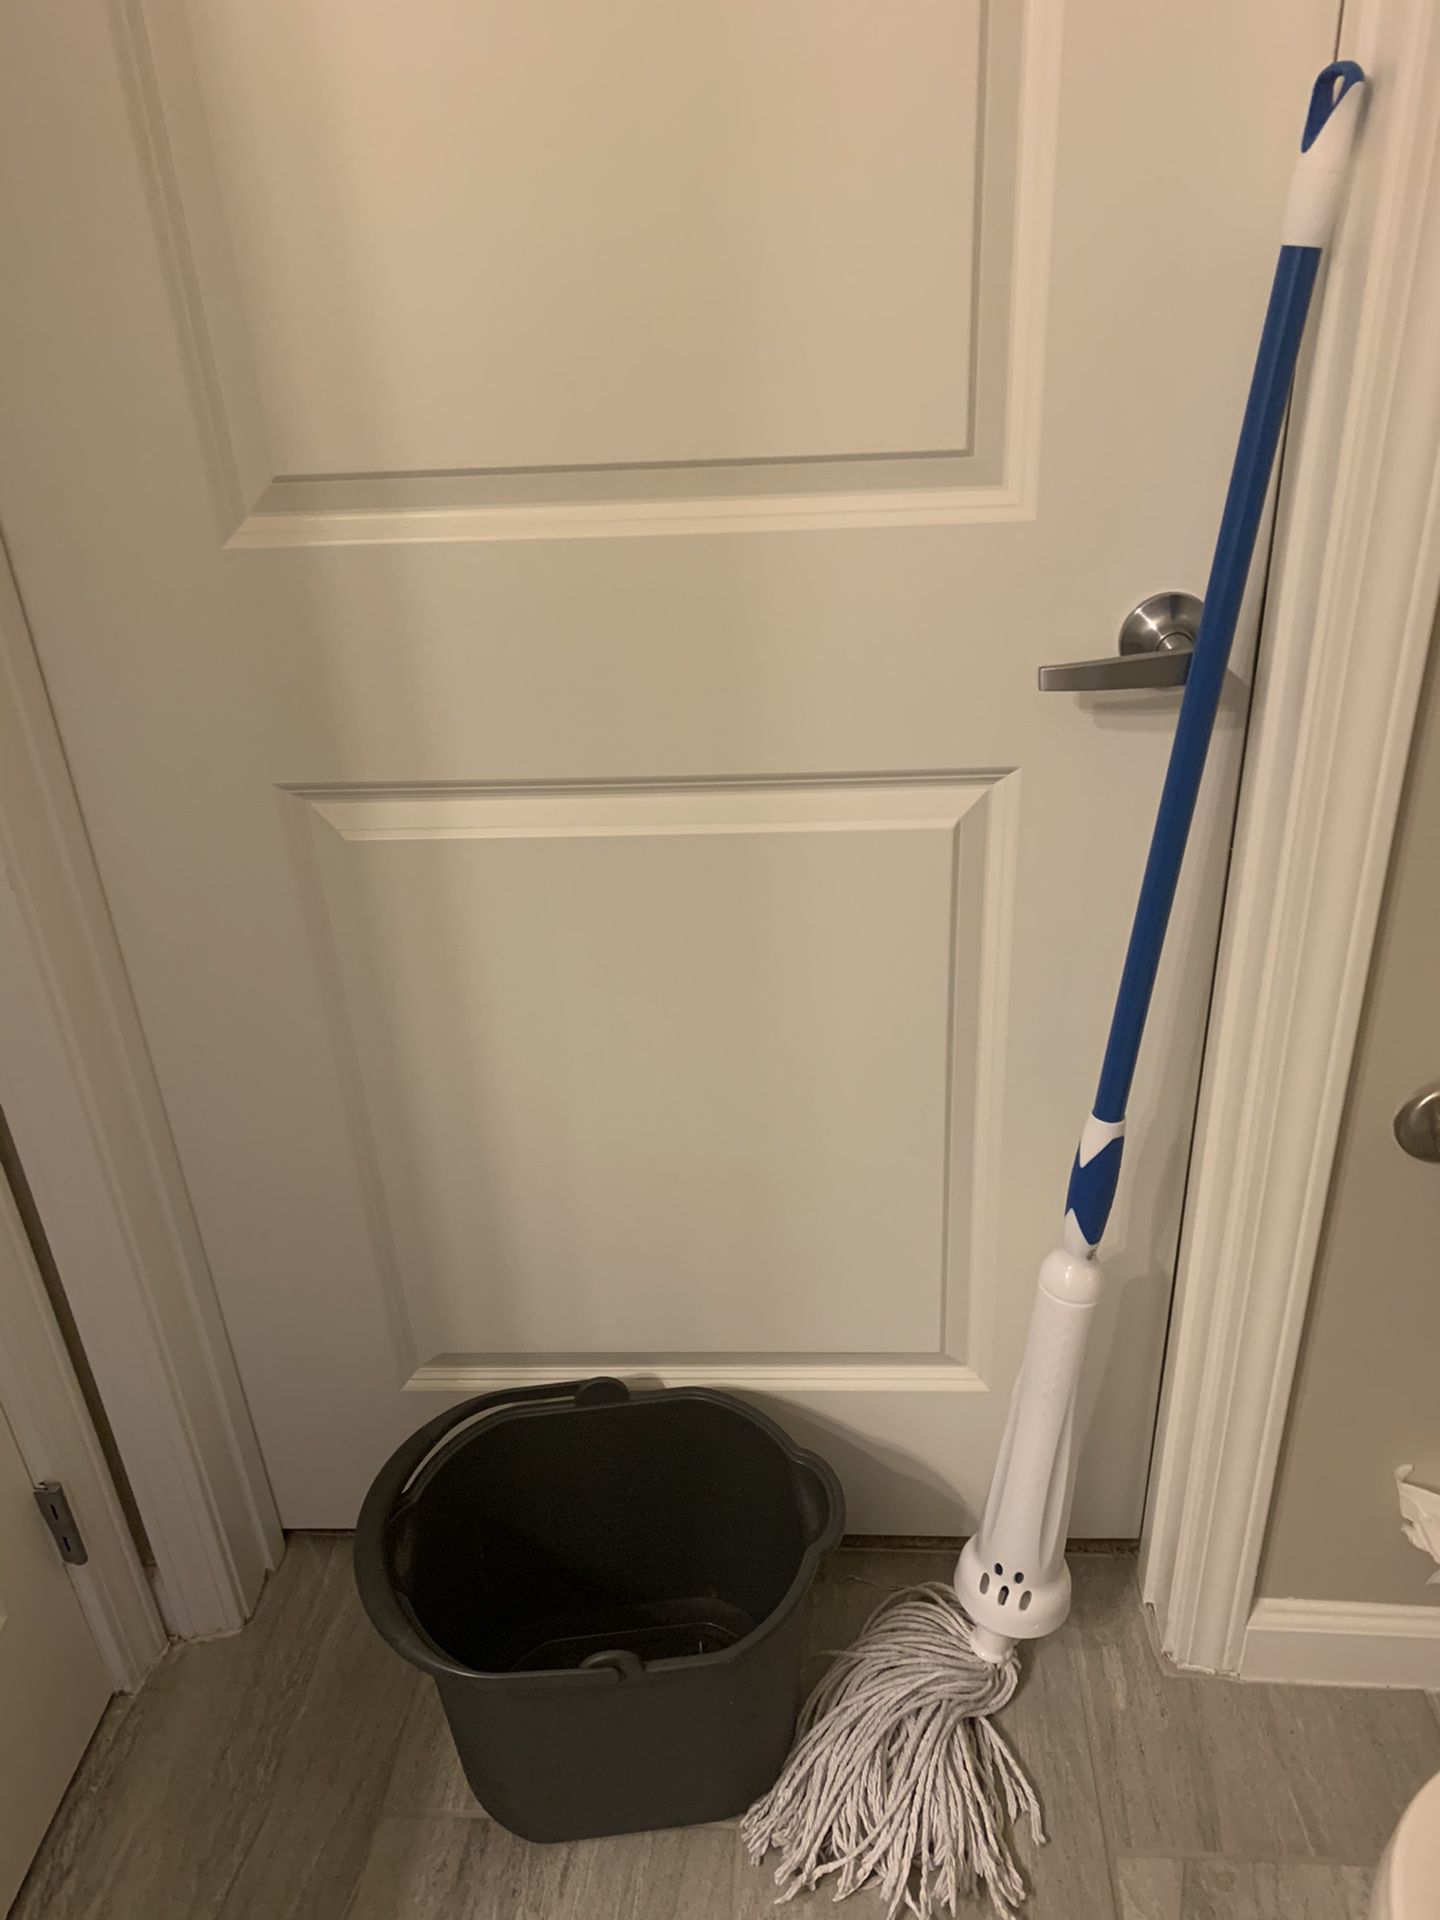 Mop and mop bucket